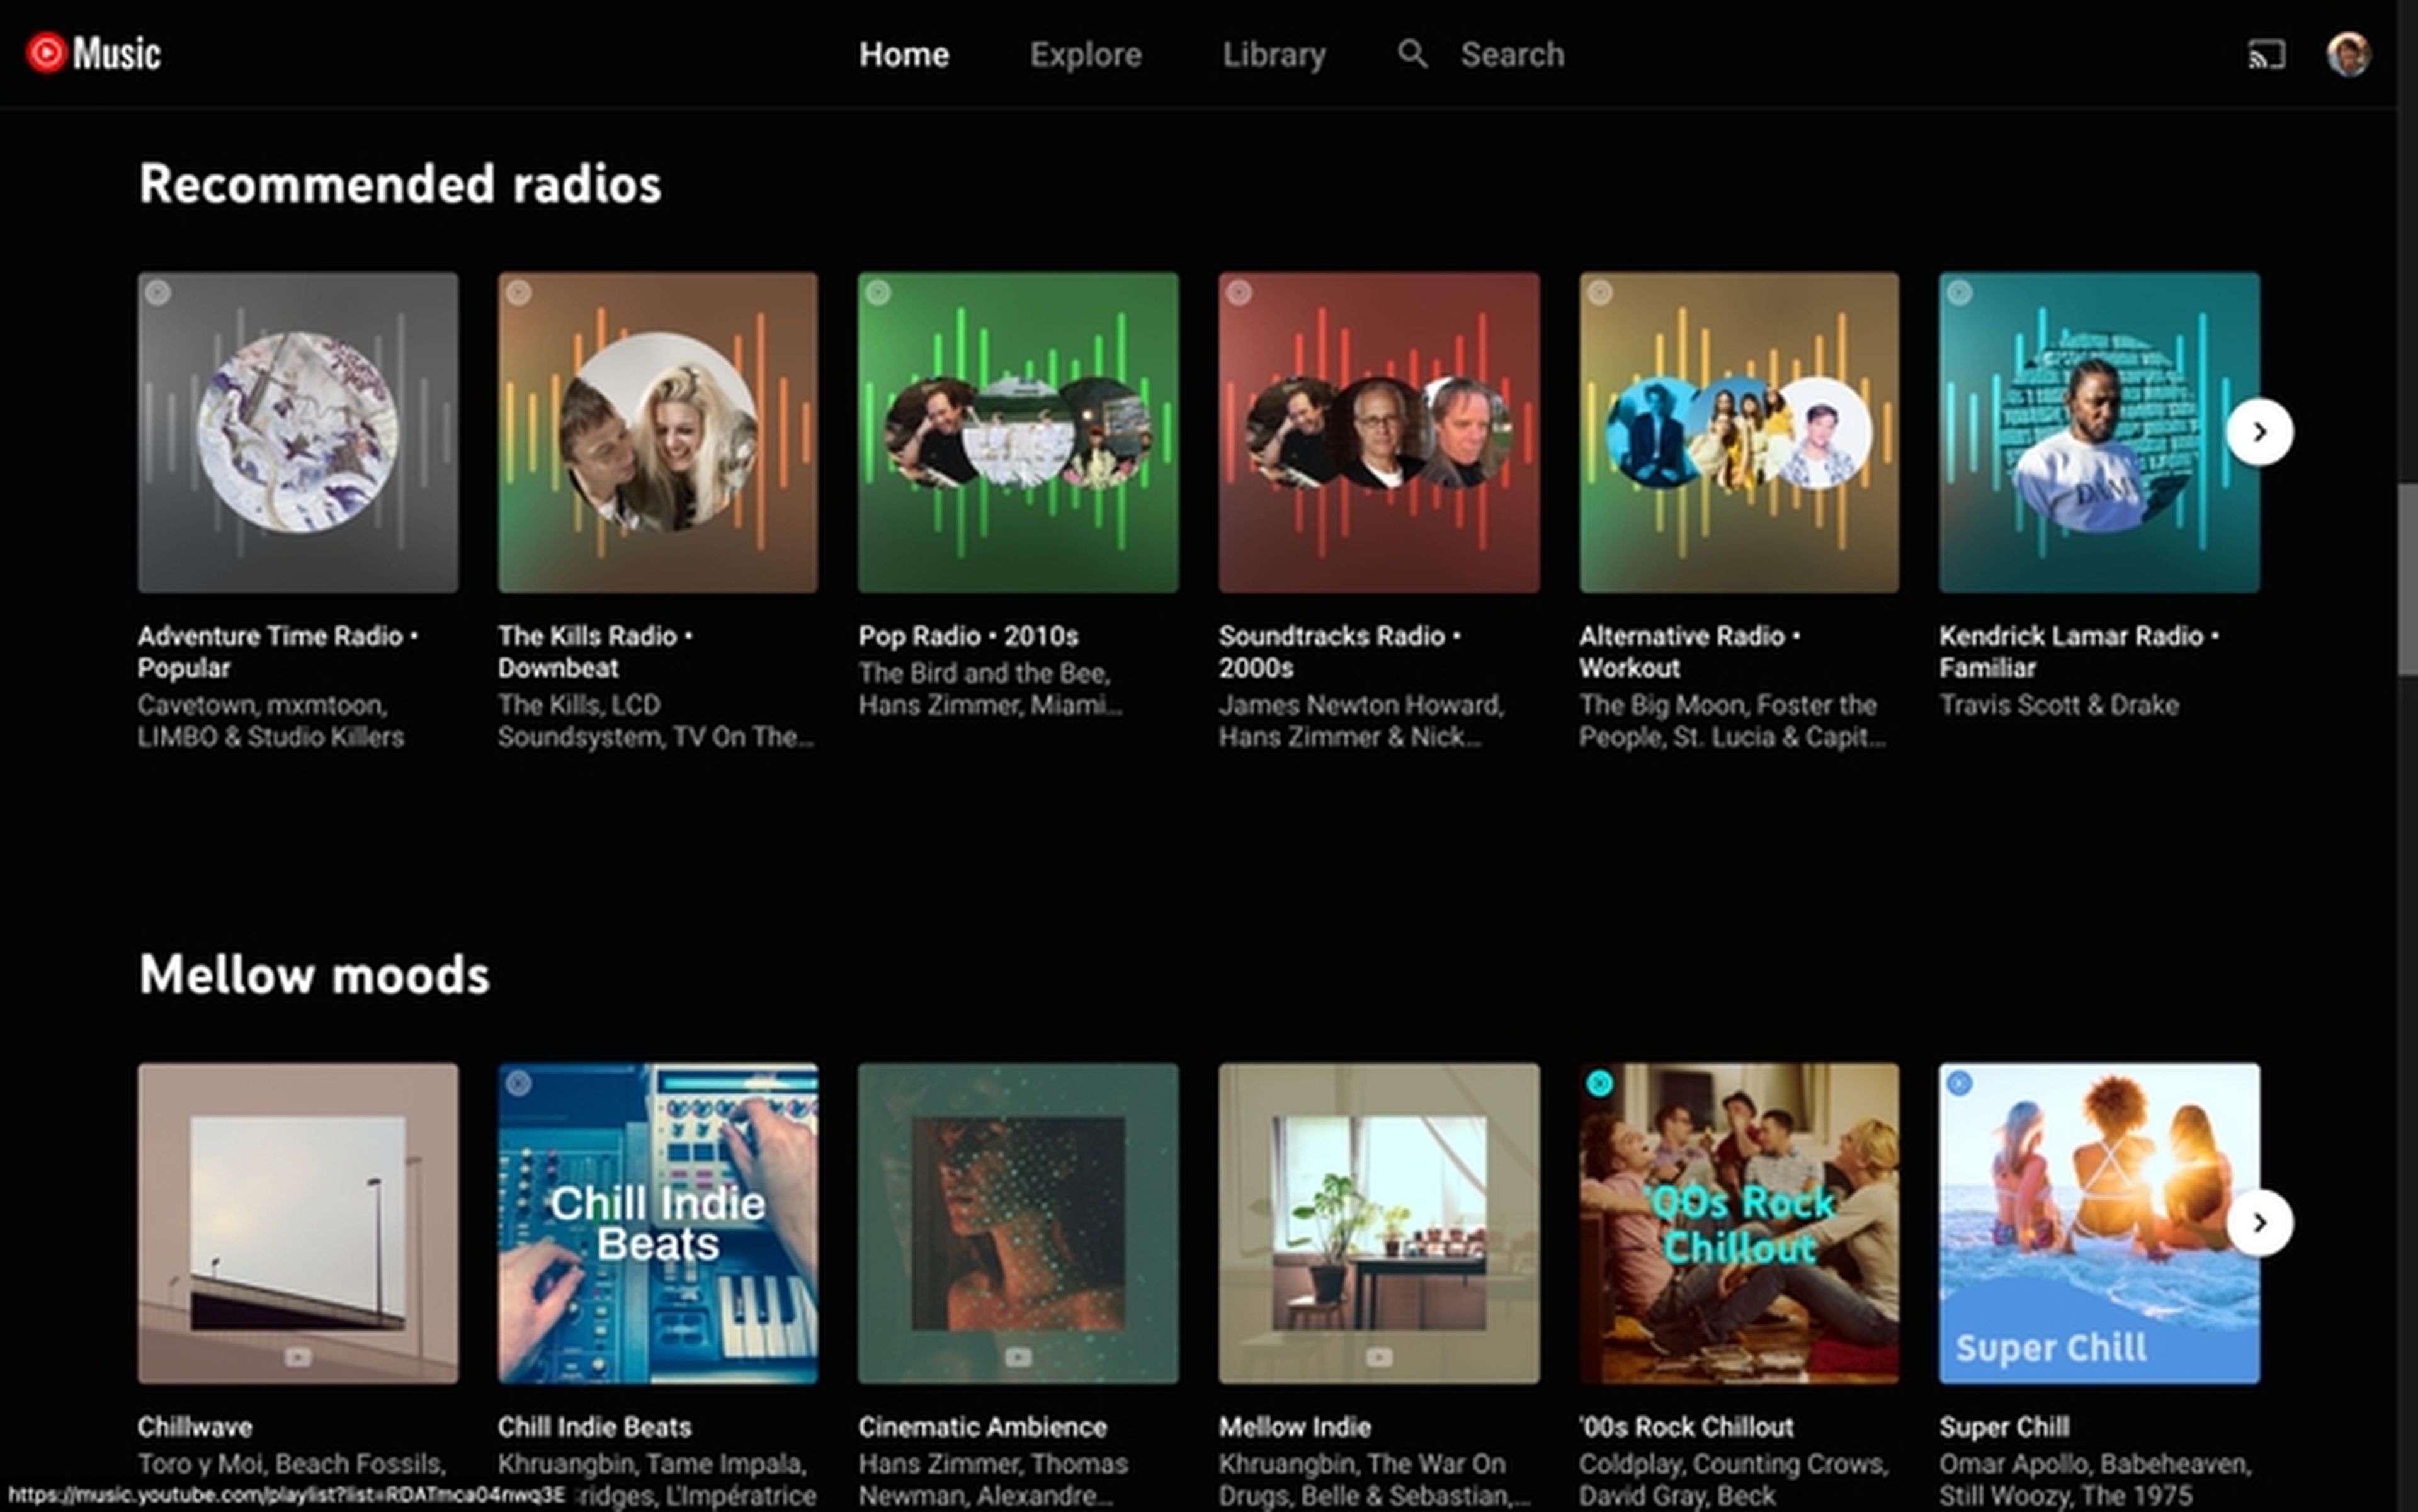 Esta es la última novedad de YouTube Music para competir con Spotify: las radios recomendadas | Computer Hoy